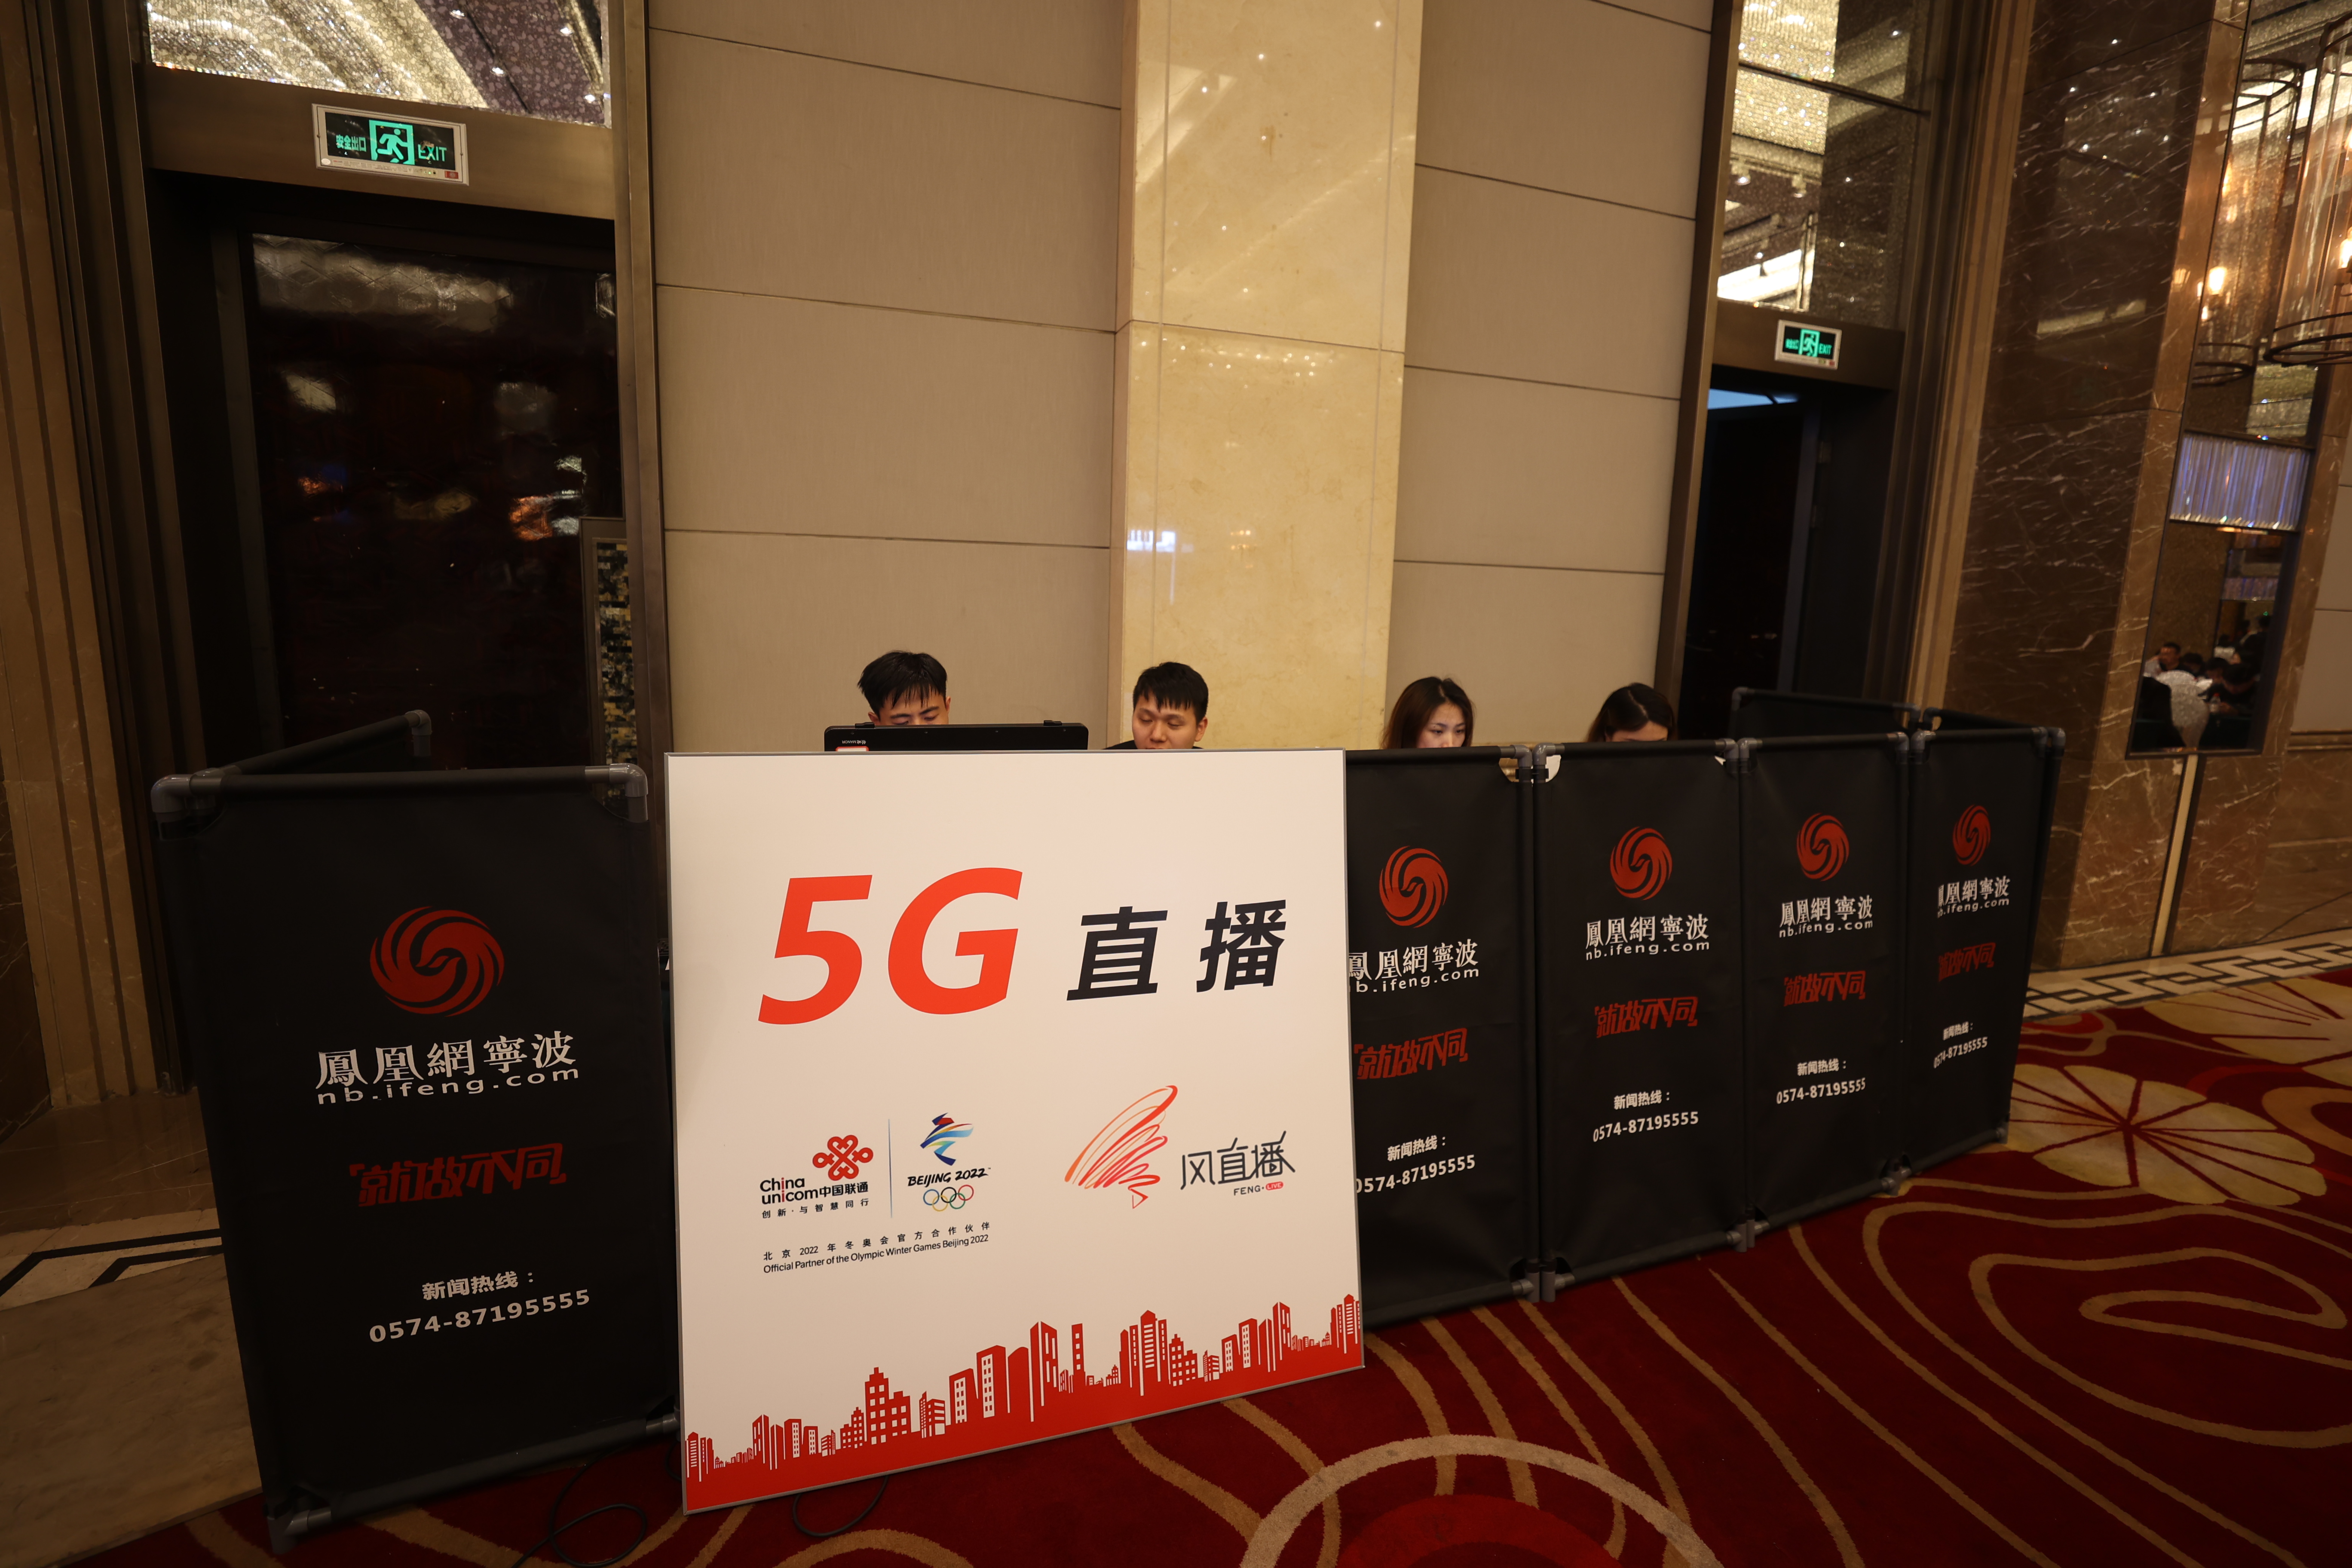 5G 技术在河南引发通信变革，手机直播内容多元化  第4张